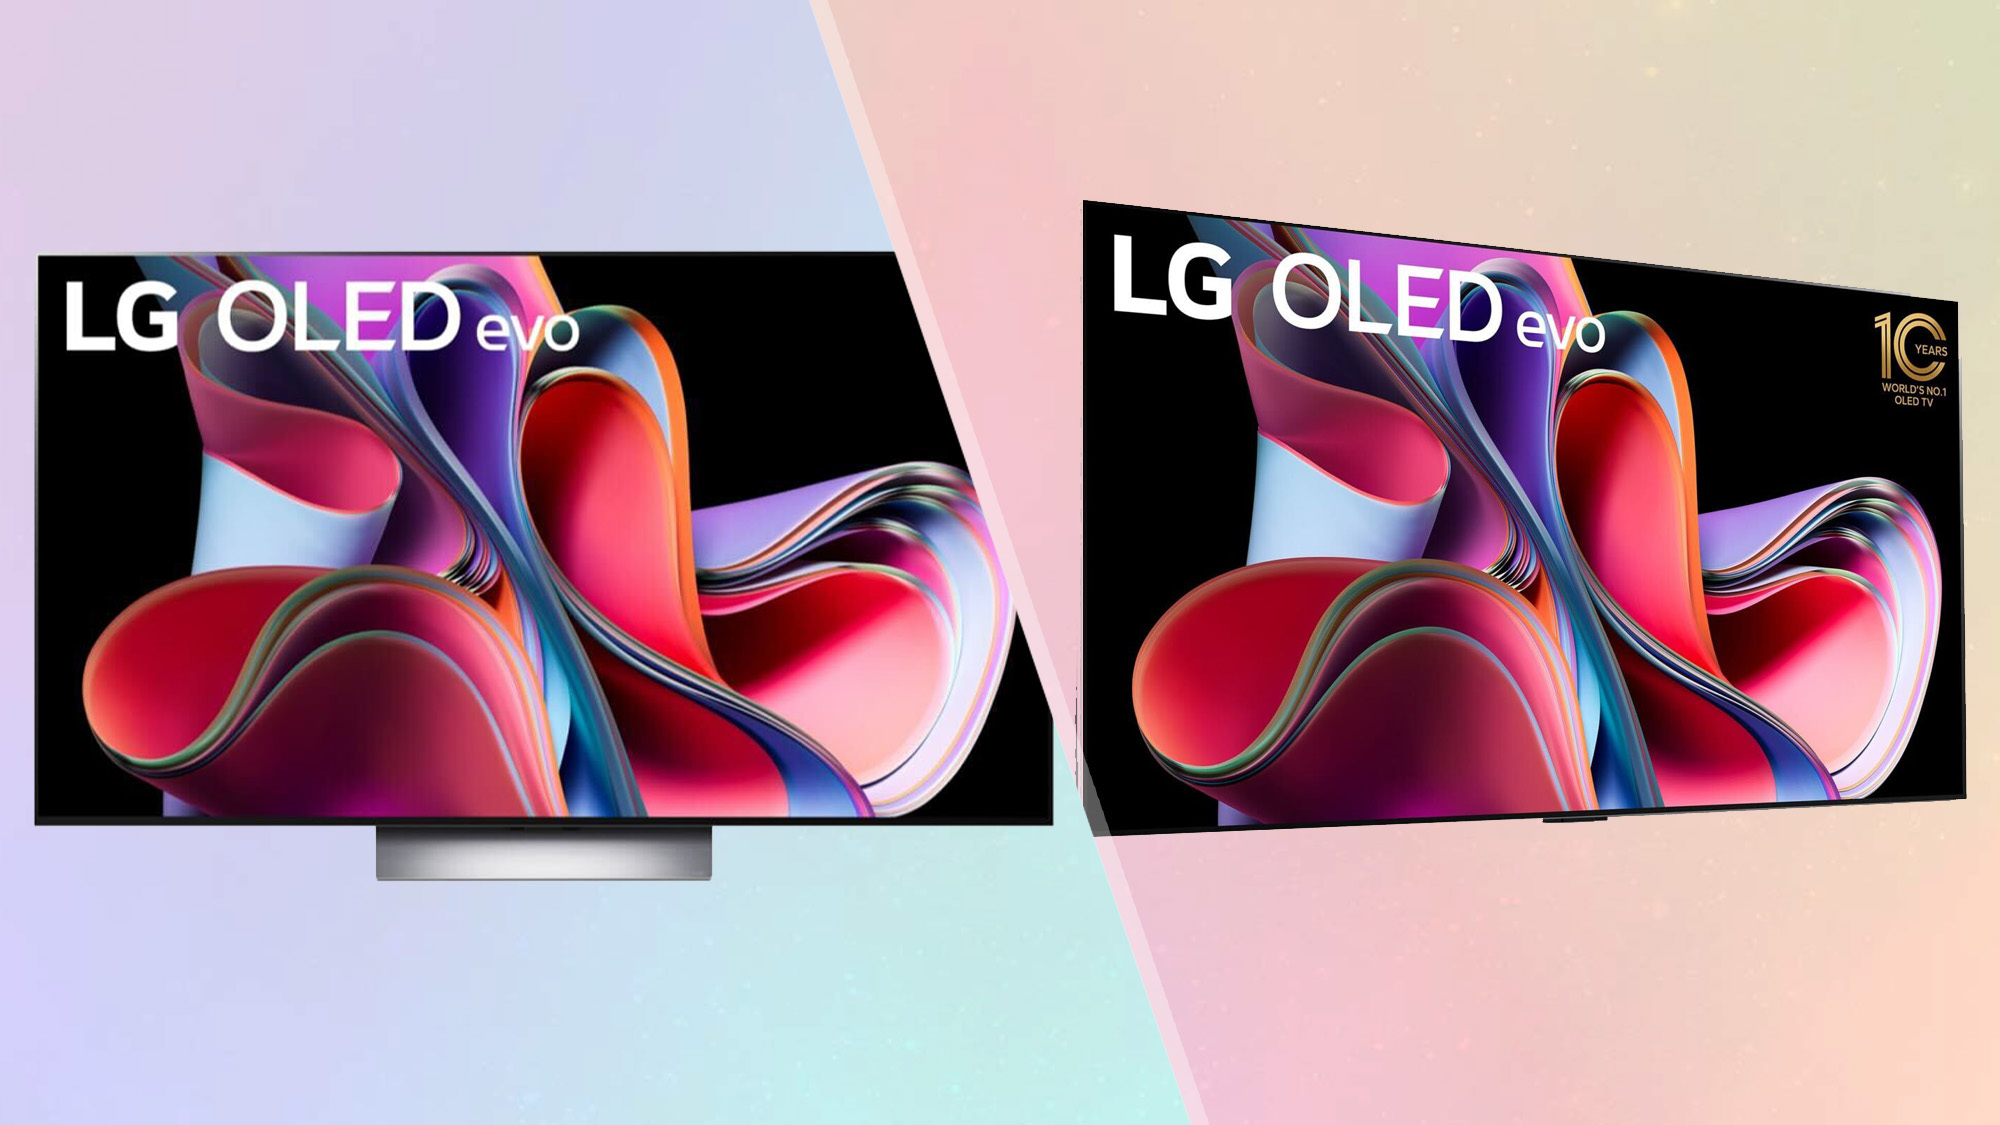 LG C3 OLED vs LG G3 OLED